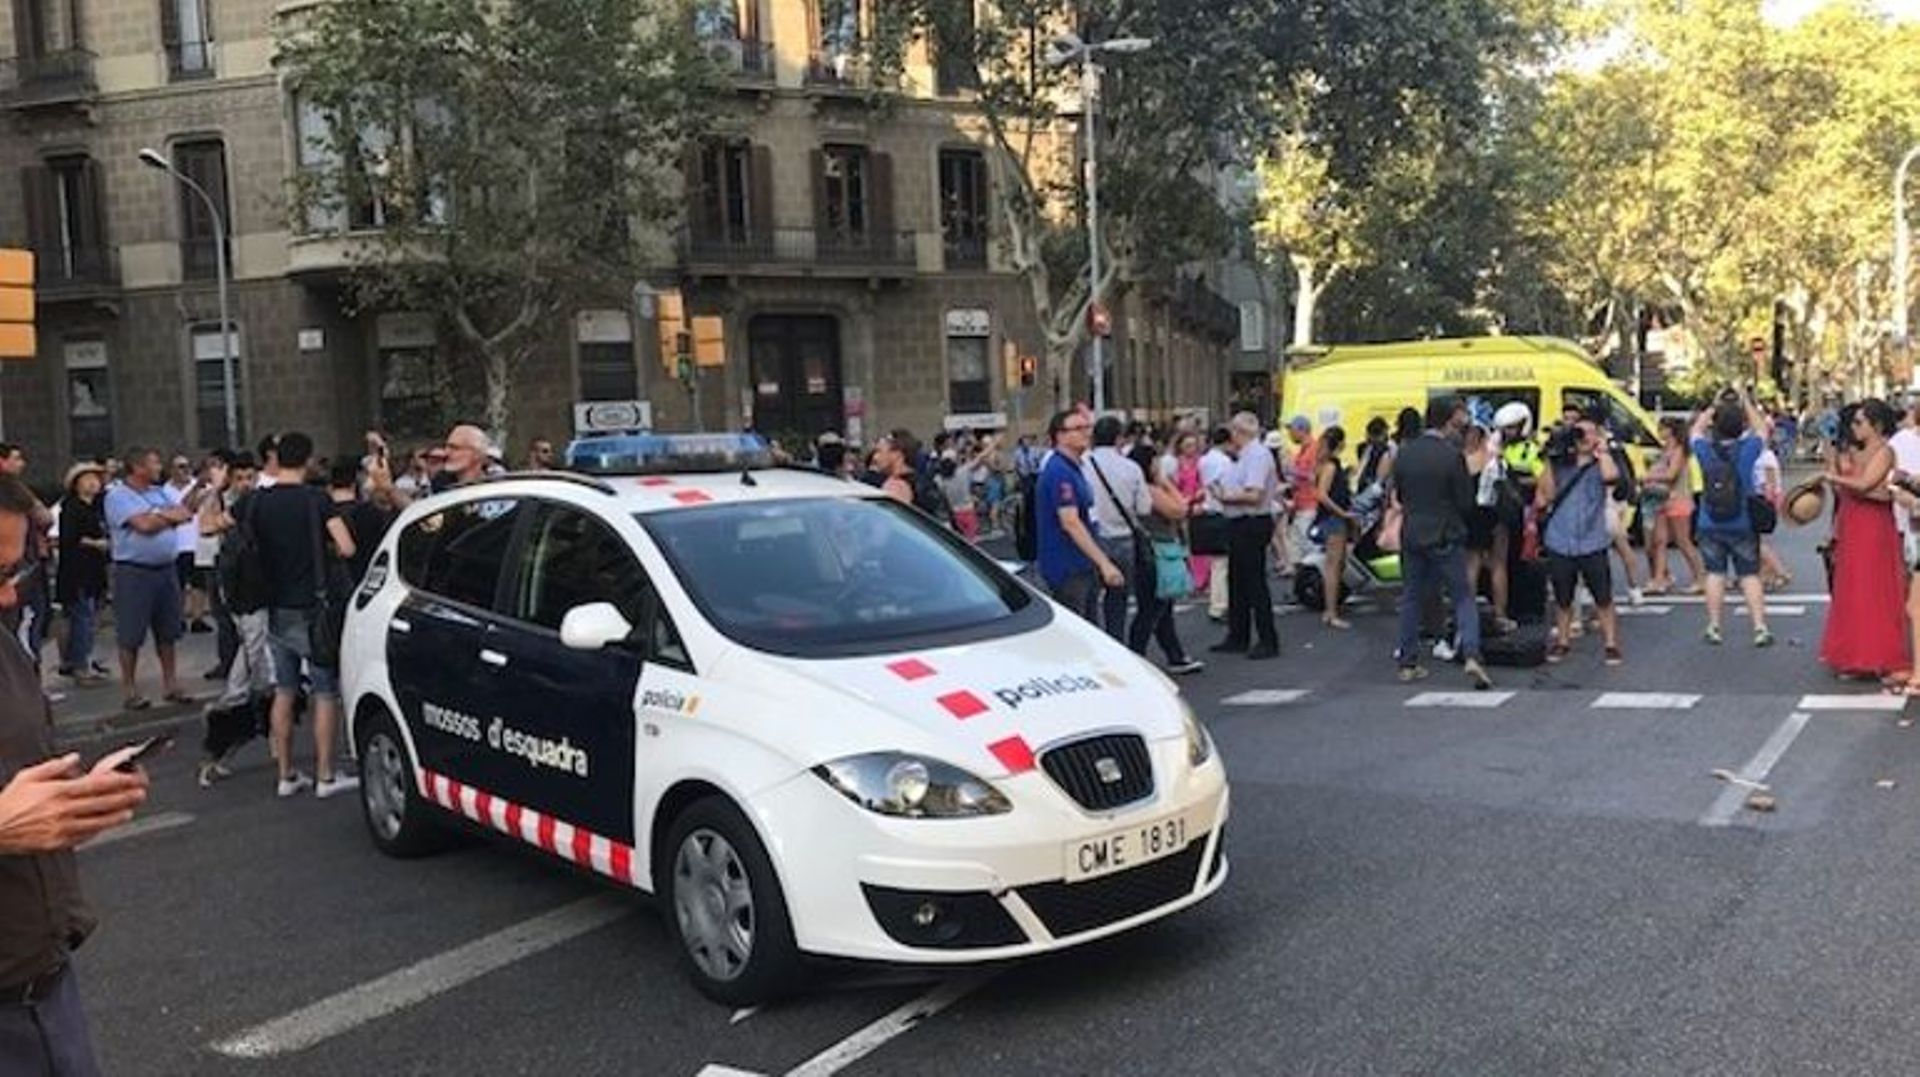 "Le cerveau des attentats en Catalogne était un informateur des services de renseignements espagnols"